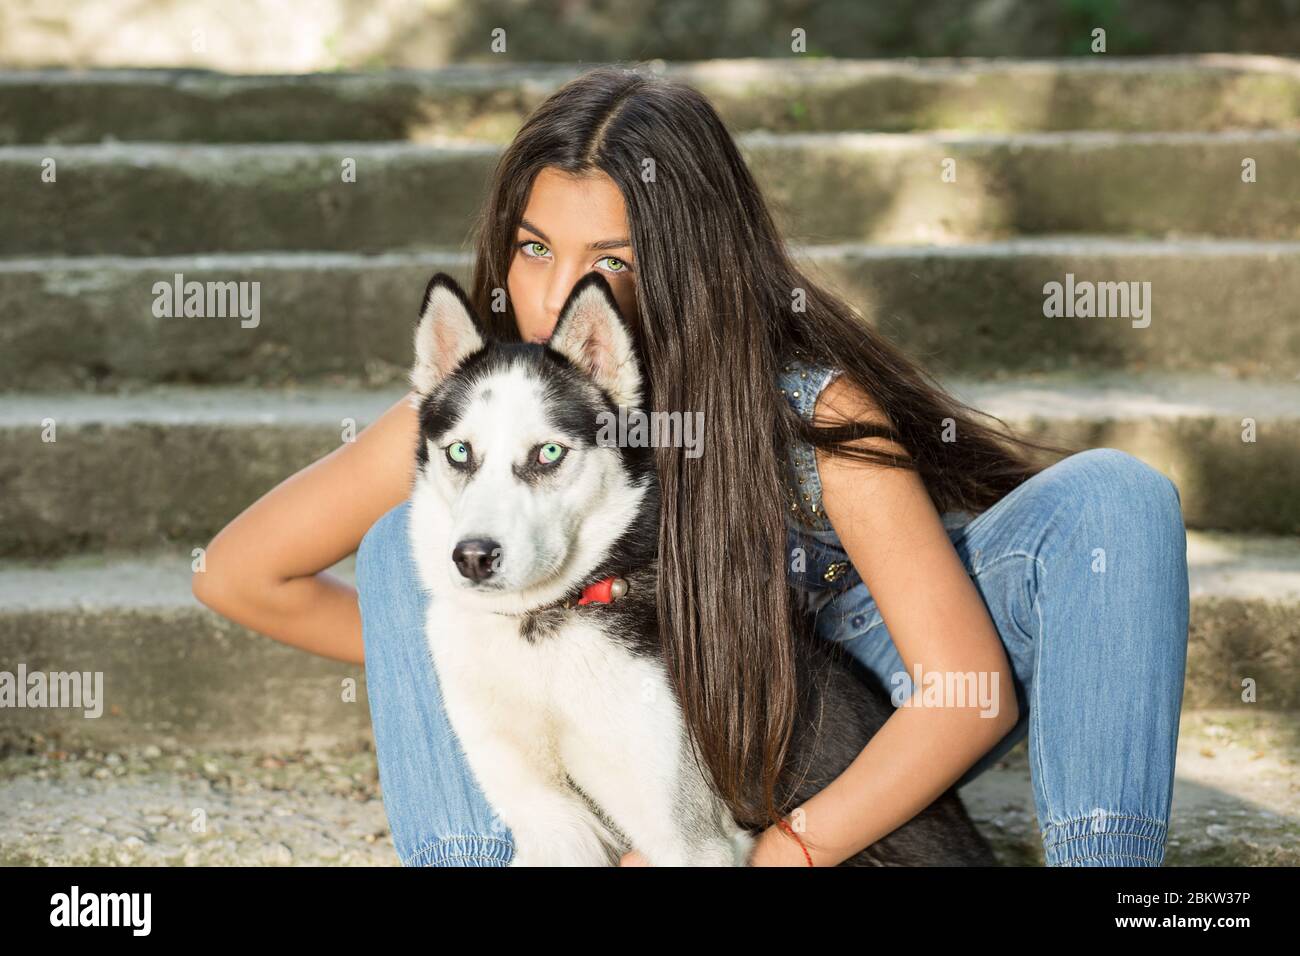 Mujer bonita y su mascota. Swag niña con su perro huskera aislado urbano  concreto gris escaleras en el fondo sentado en las escaleras ambos mirando  la cámara. Tak Fotografía de stock -